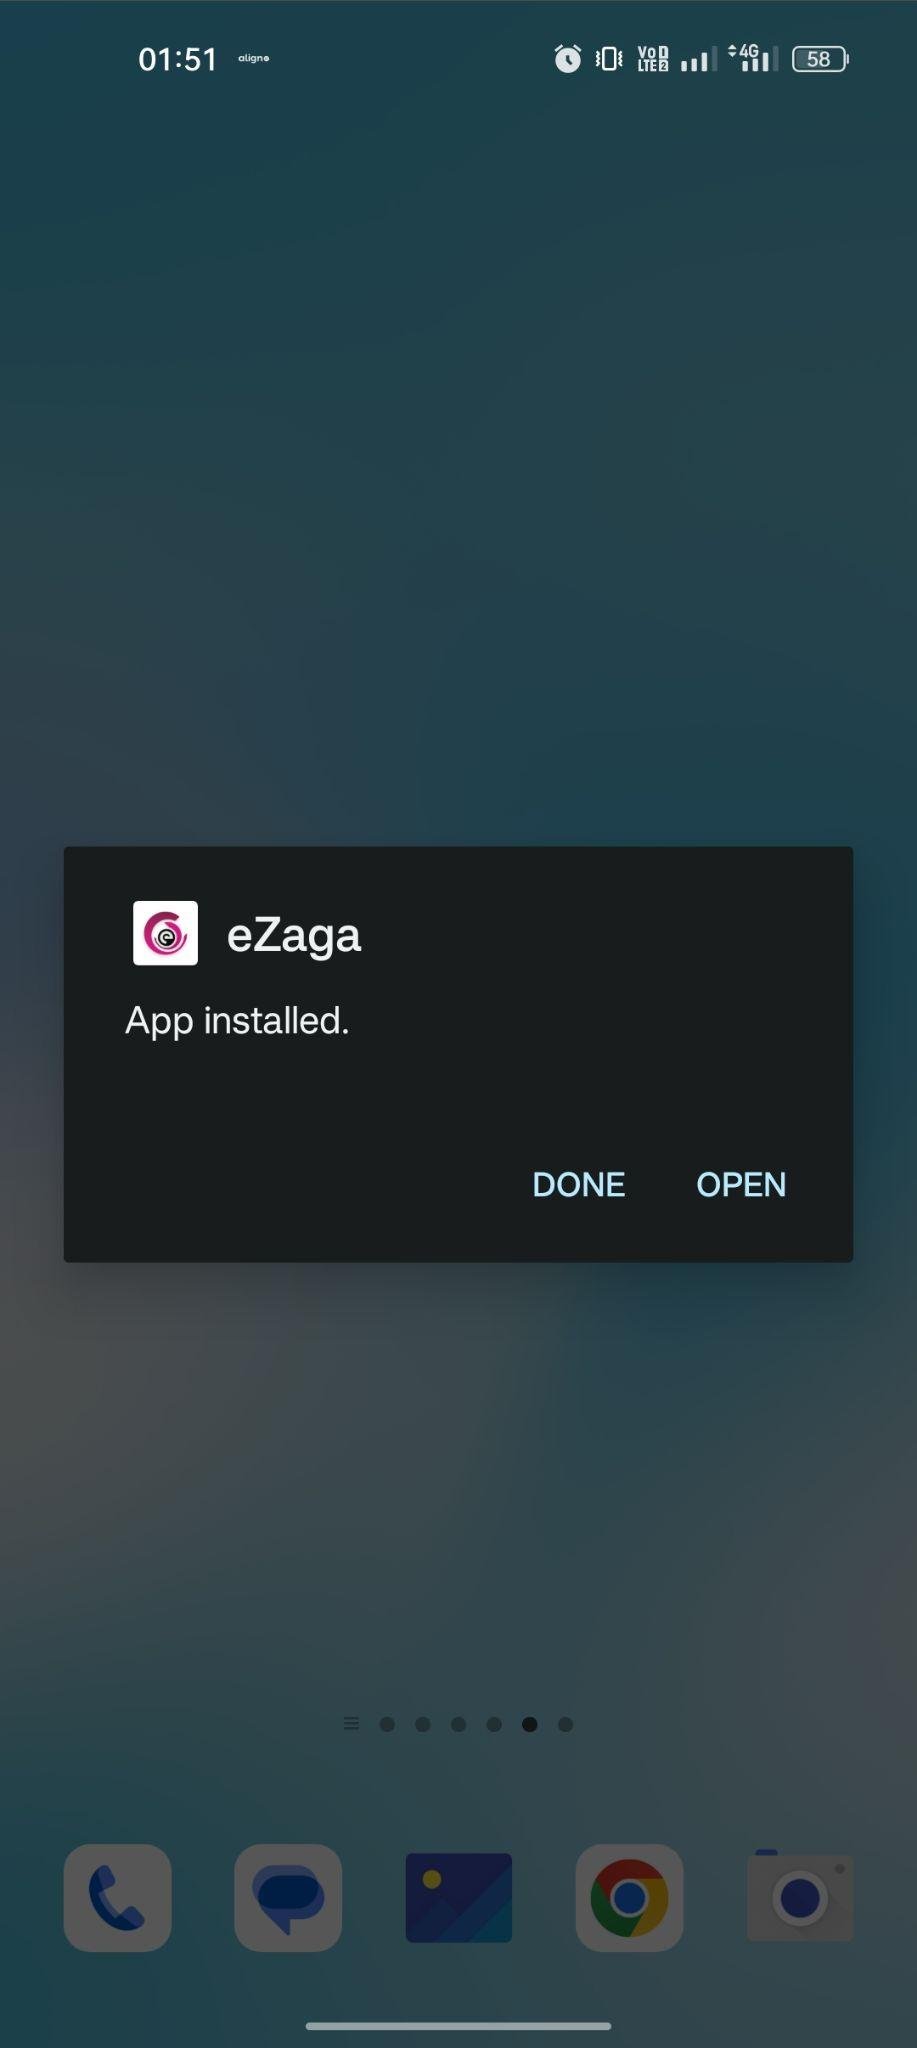 eZaga apk installed